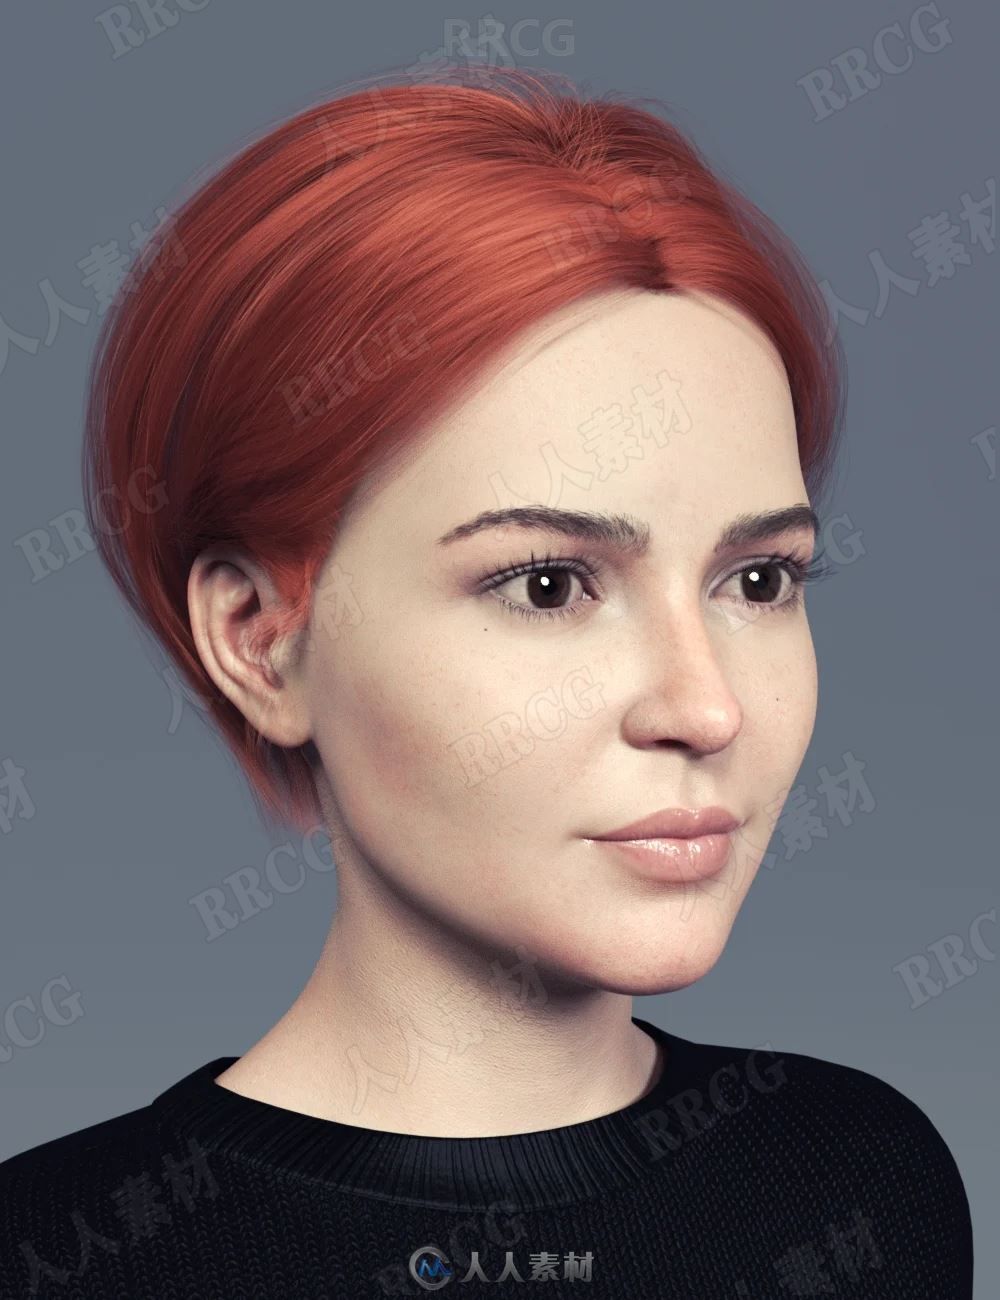 女性齐耳中分短发鲜艳发色3D模型合集